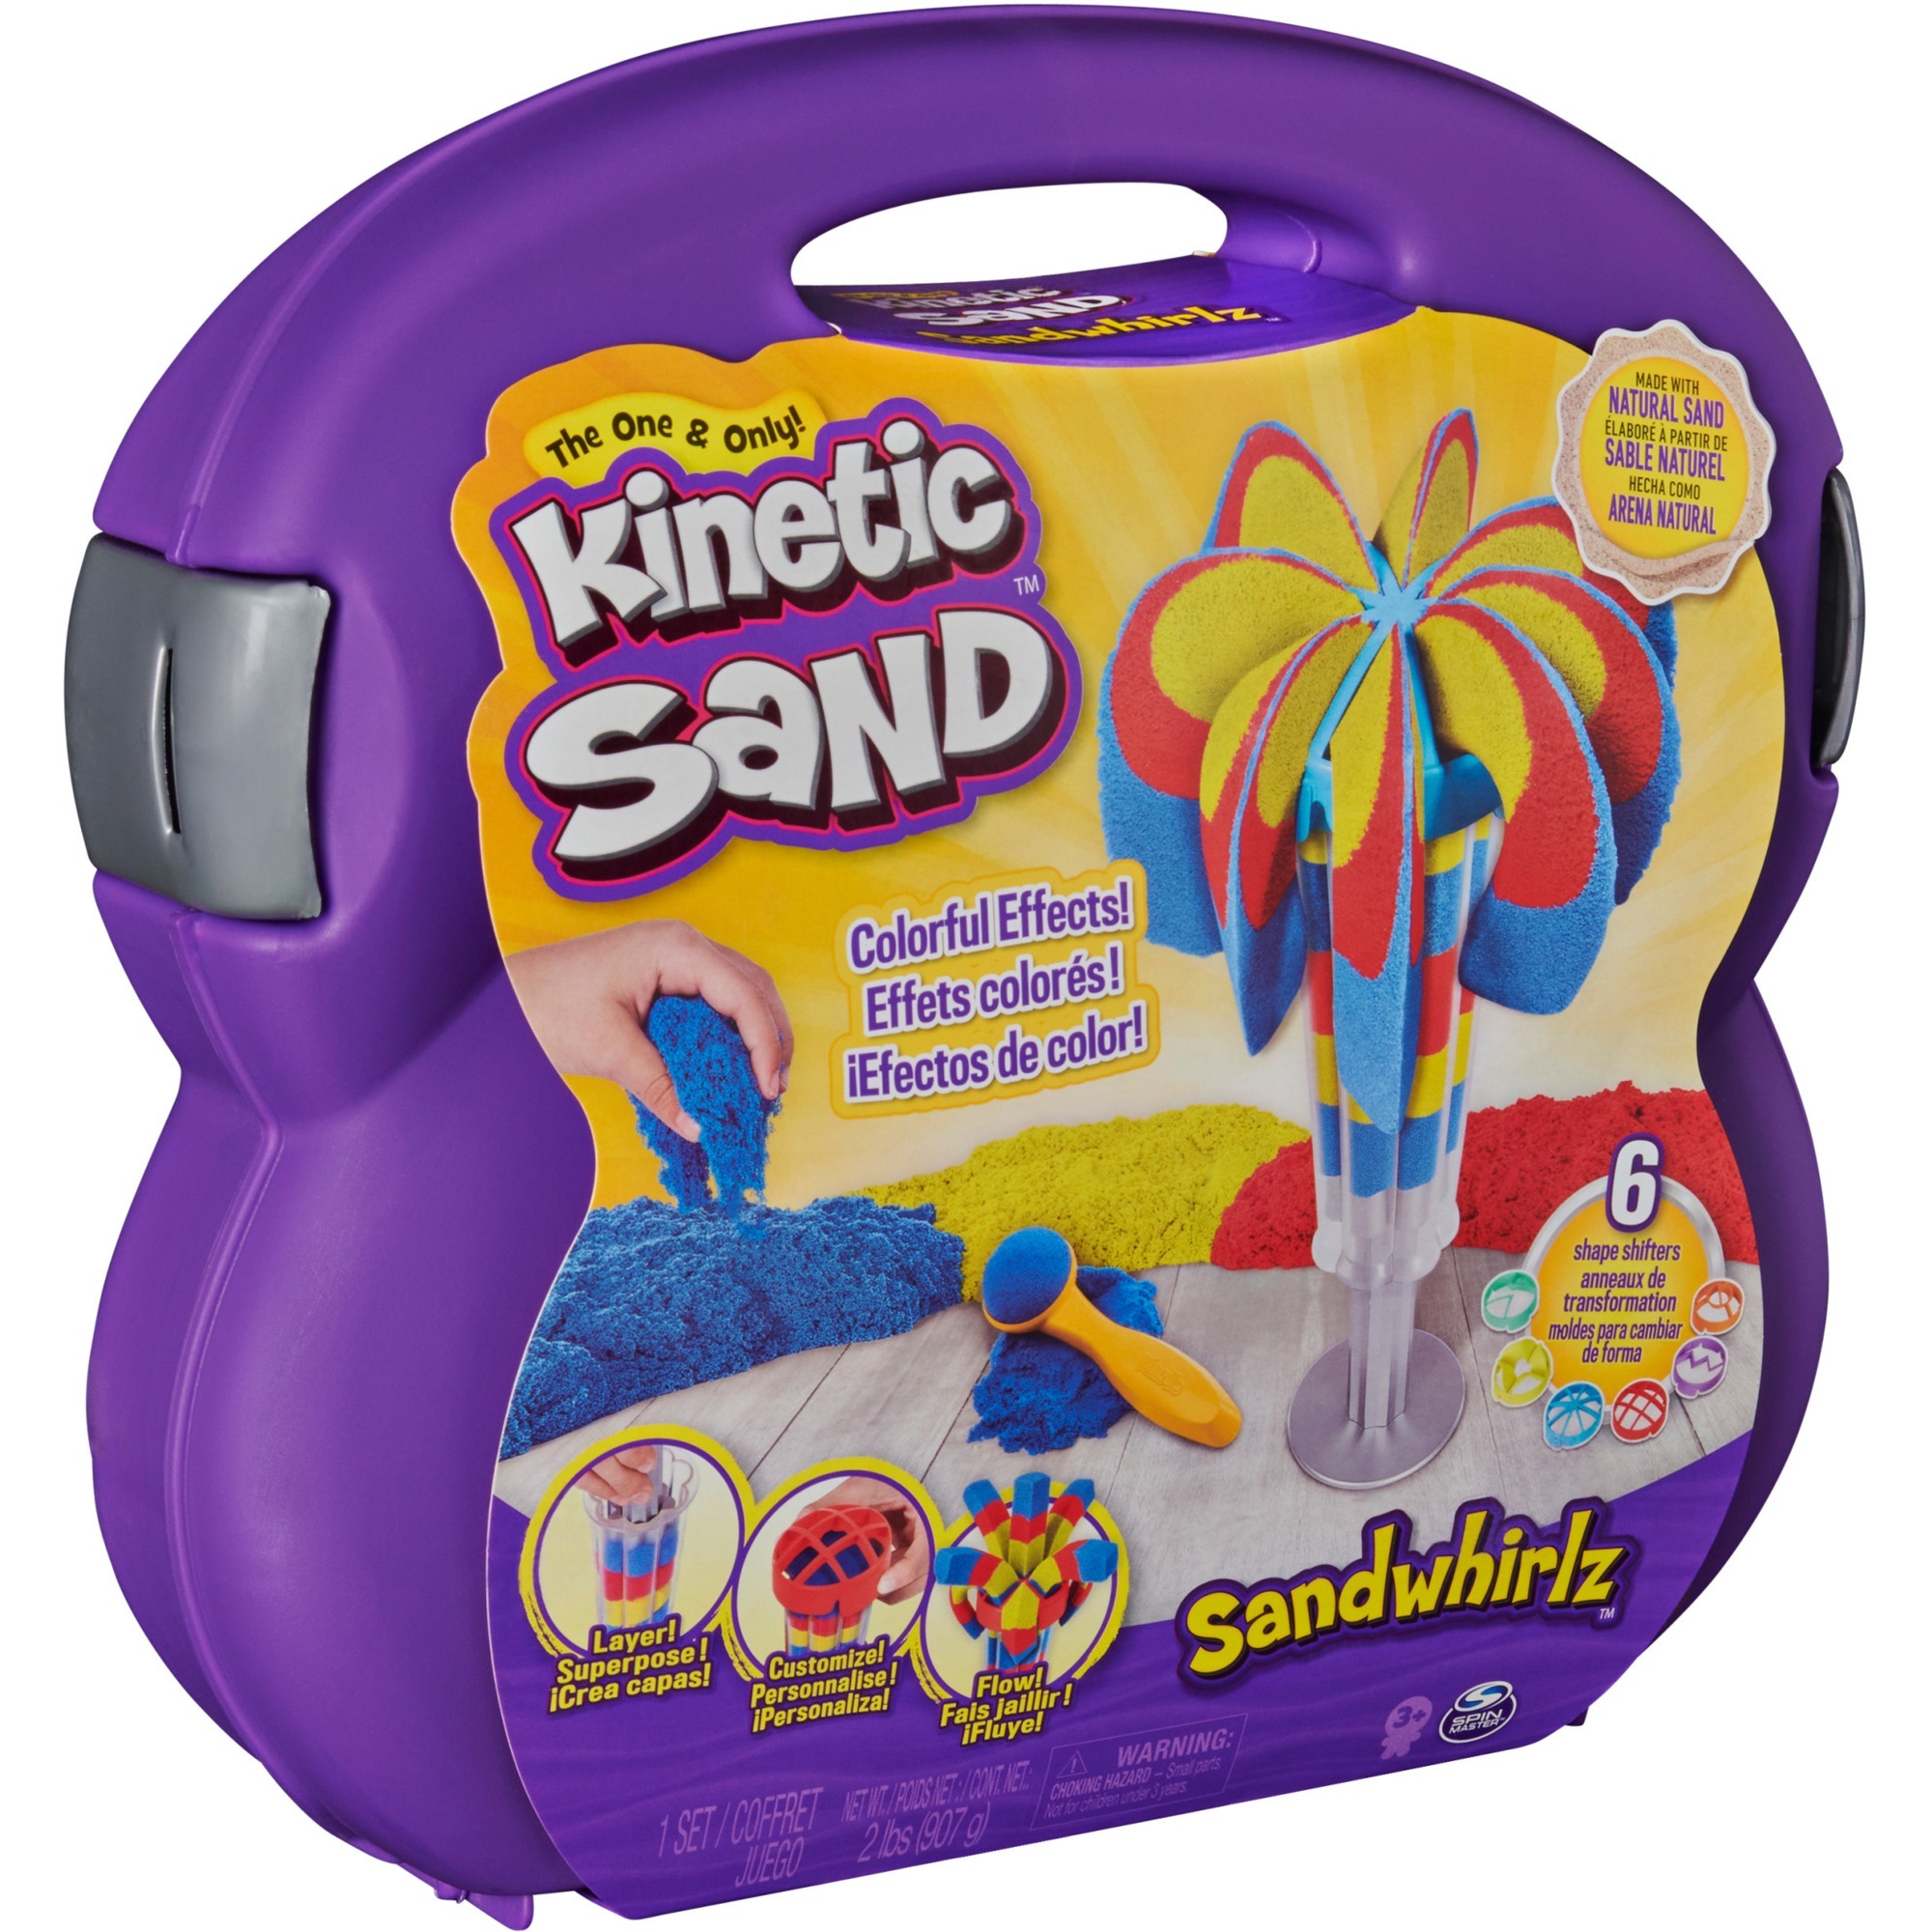 Image of Alternate - Kinetic Sand - Sandwhirlz Set, Spielsand online einkaufen bei Alternate